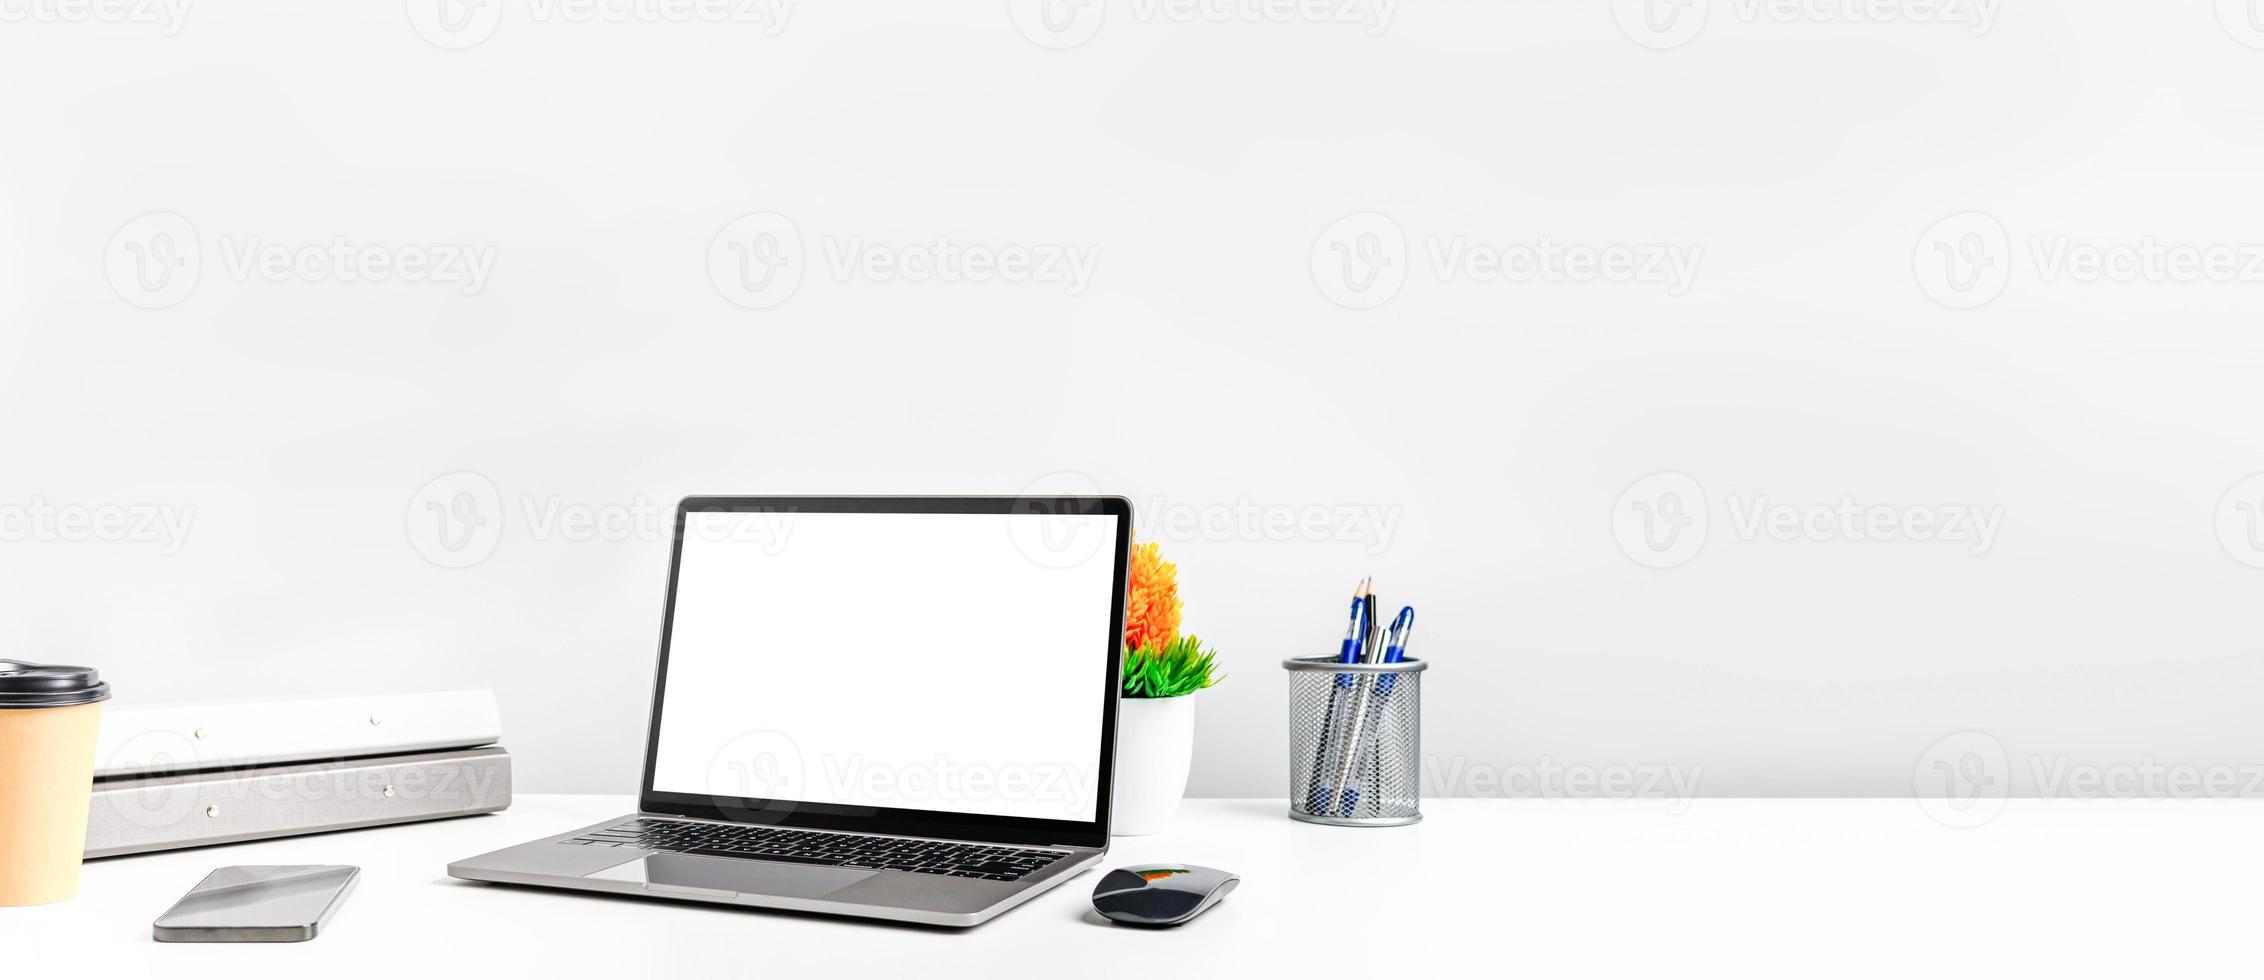 kopieer ruimte aan de rechterkant voor ontwerp of tekst. werkconcept met behulp van technologie smartphones, notebook, internet. leeg wit scherm laptop op witte tafel in het kantoor. close-up, grijze en onscherpe achtergrond foto